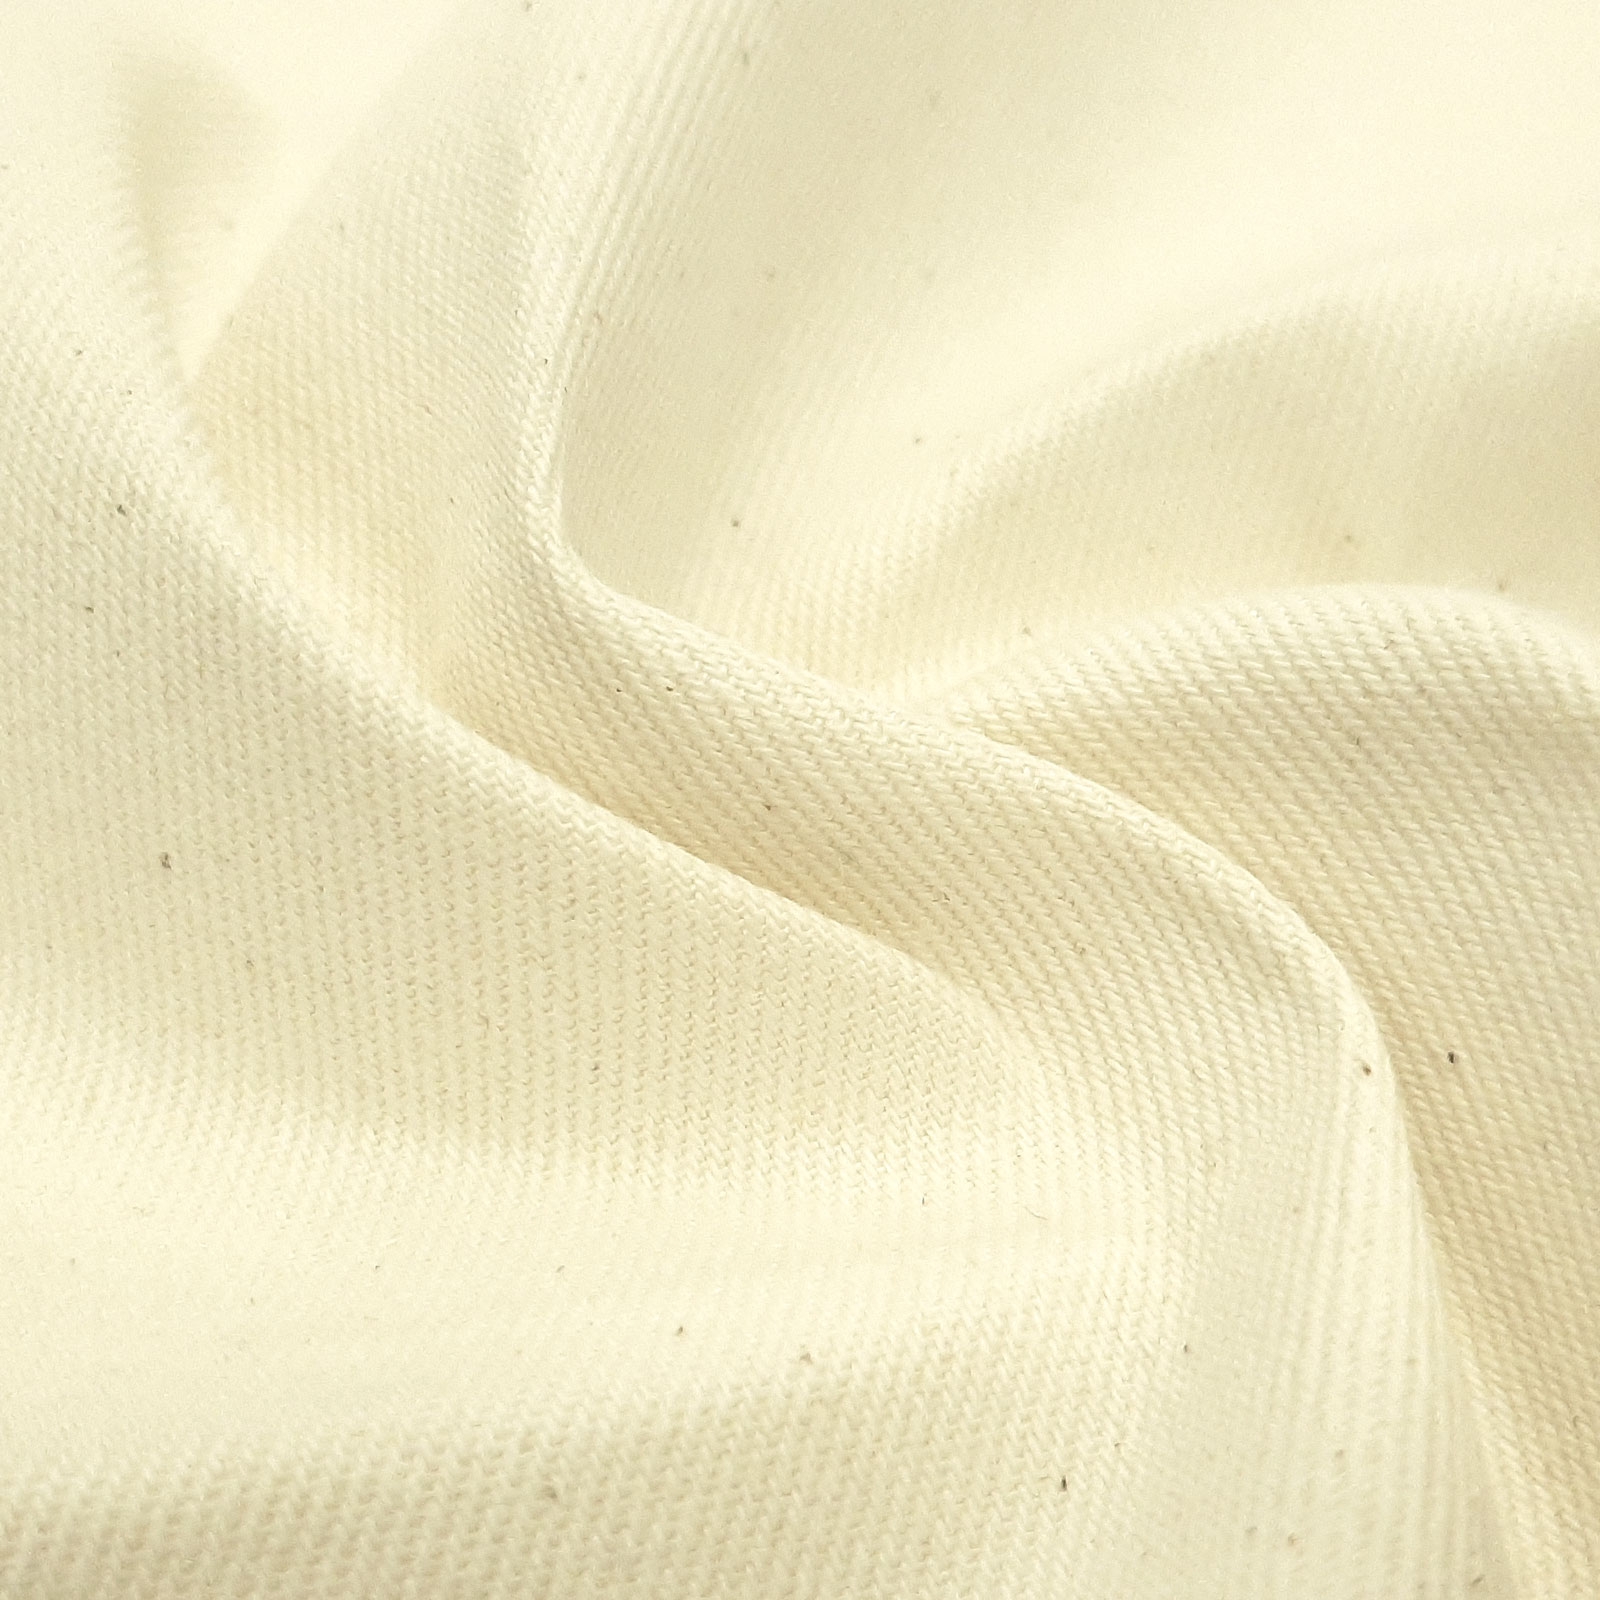 Nordkap Strong - natural cotton fabric